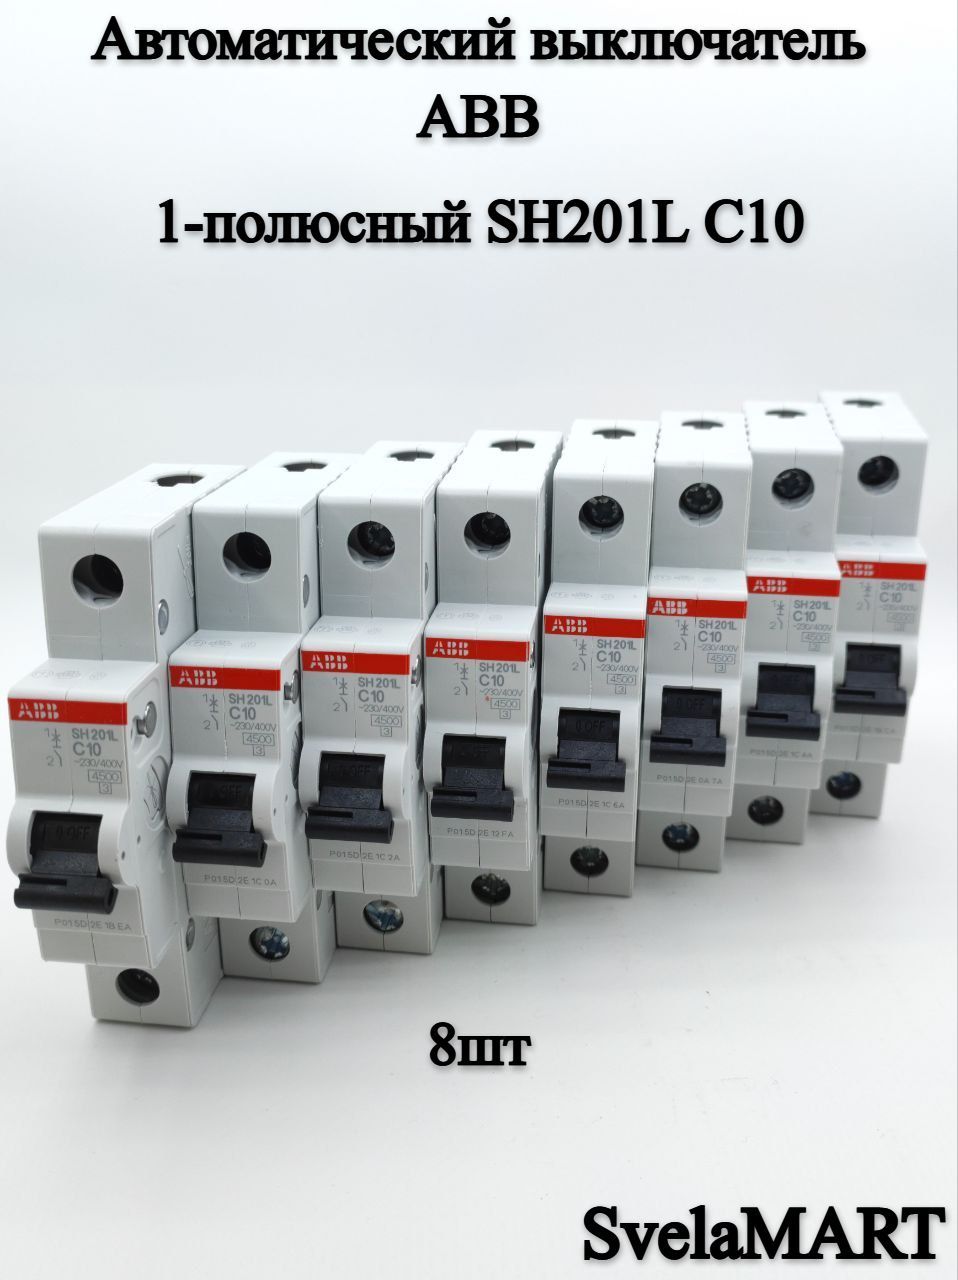 Автоматический выключатель abb sh201l. Автомат sh201l. Aвтоматич. Выкл-ль 1-пол.sh201l c20. Sh201l. Выключатель автоматический однополюсный 40а с sh201l 4.5ка (sh201l c40).